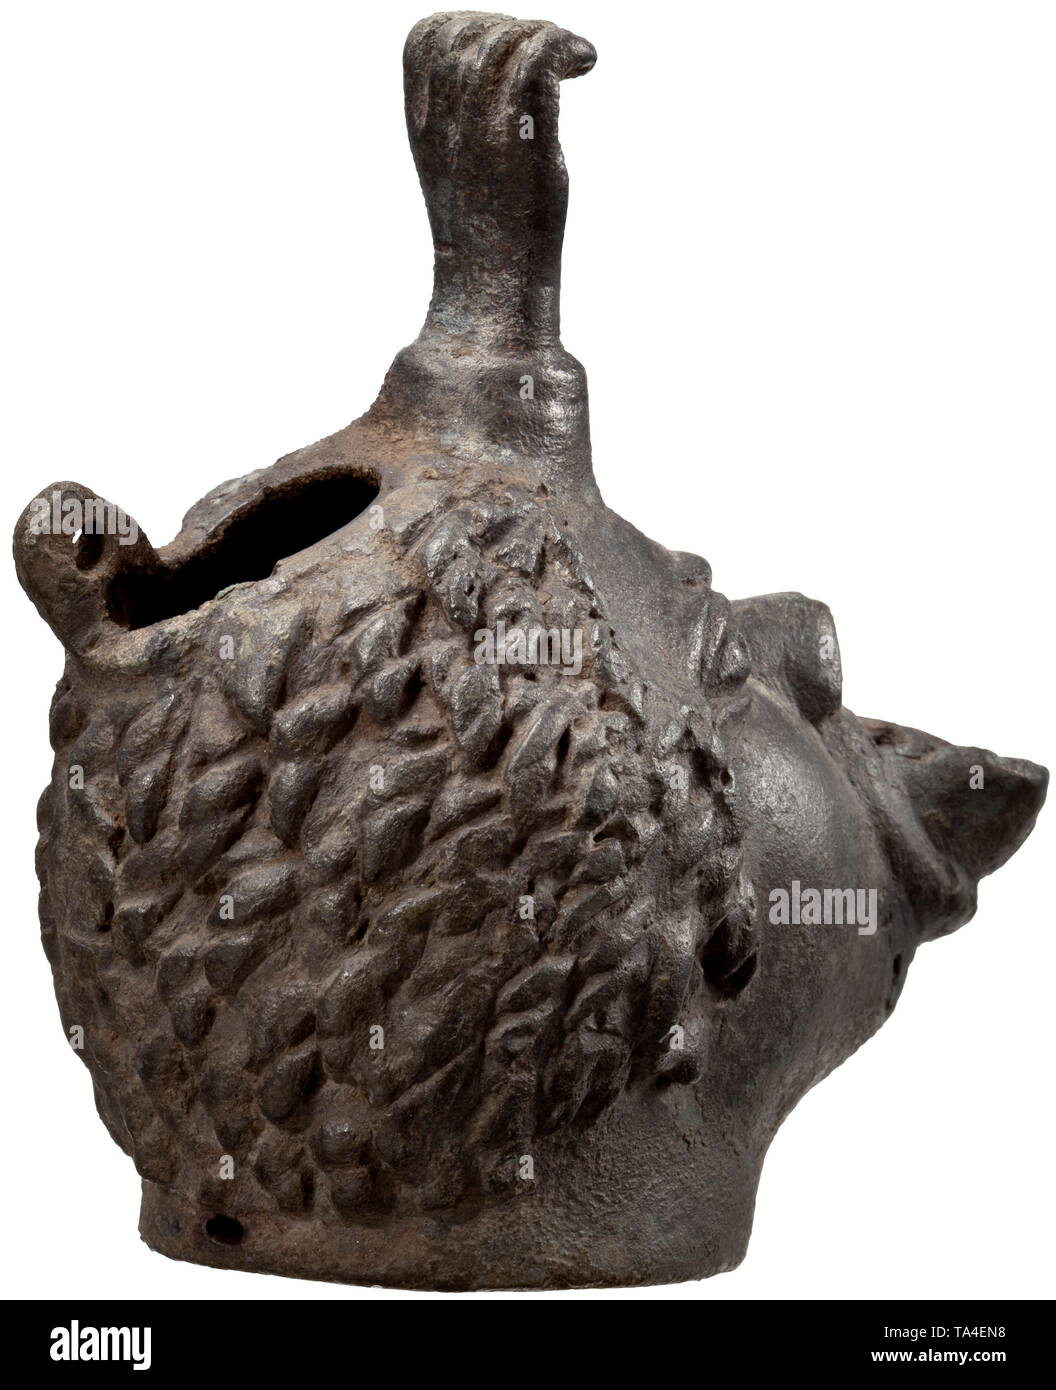 Une lampe à huile romaine en forme de tête de l'Afrique, 2e - 3e siècle lampe en bronze, dont l'ouverture est façonné comme le tacaud bouche d'un homme africain. En combinaison avec les yeux protubérants et un poing creuses émergeant de la front, l'ensemble de la pièce a un aspect grotesque. Le style de cheveux bouclés, cultivées dans les verrous. Le couvercle est manquant à l'arrière de la tête, une patte d'articulation toujours en place. Rare version d'un type courant avec un coup de poing sur le front. Patine vert foncé. Longueur 9.6 cm, hauteur 10.3 cm. Provenance : Collection privée, viennois, Additional-Rights Clearance-Info-acqui-Not-Available Banque D'Images